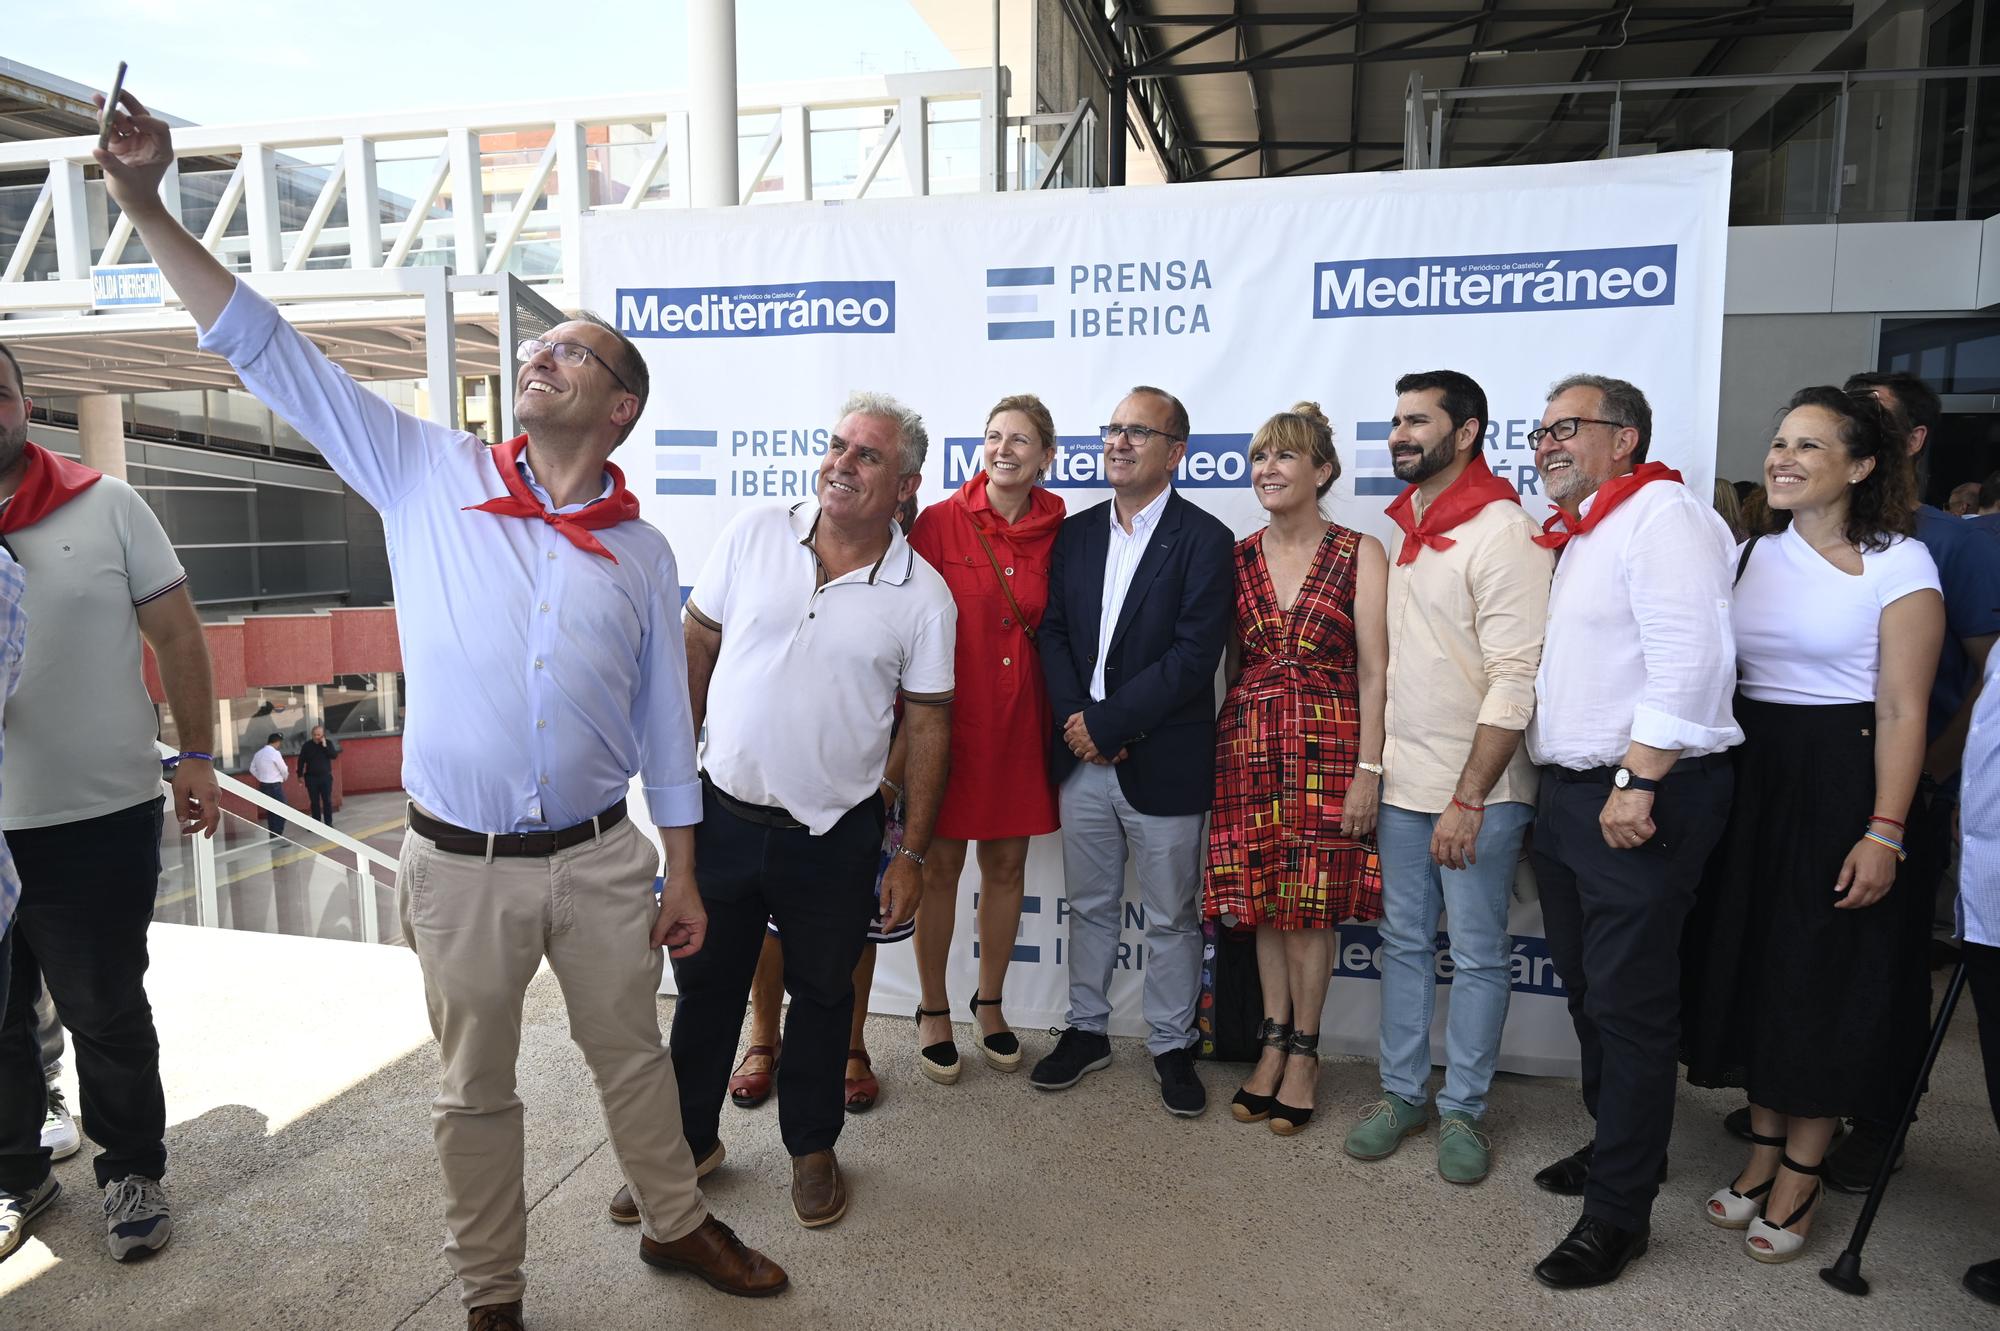 La bodeguilla de Mediterráneo, epicentro social y político de las fiestas de Sant Pere del Grau de Castelló